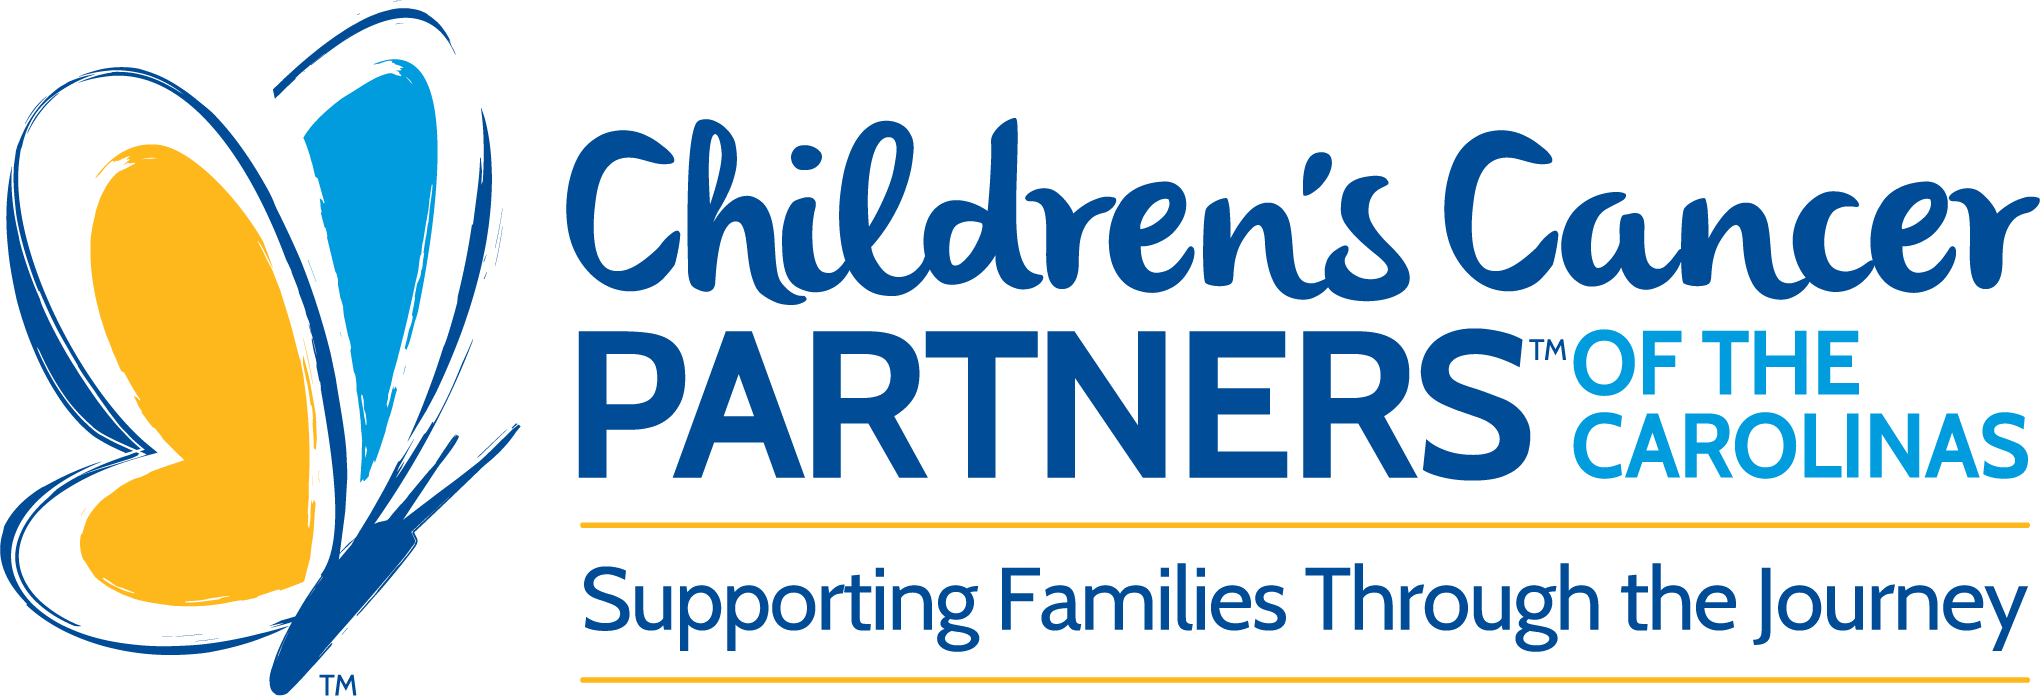 Childrens Cancer Partners Logo HORIZ RGB 2